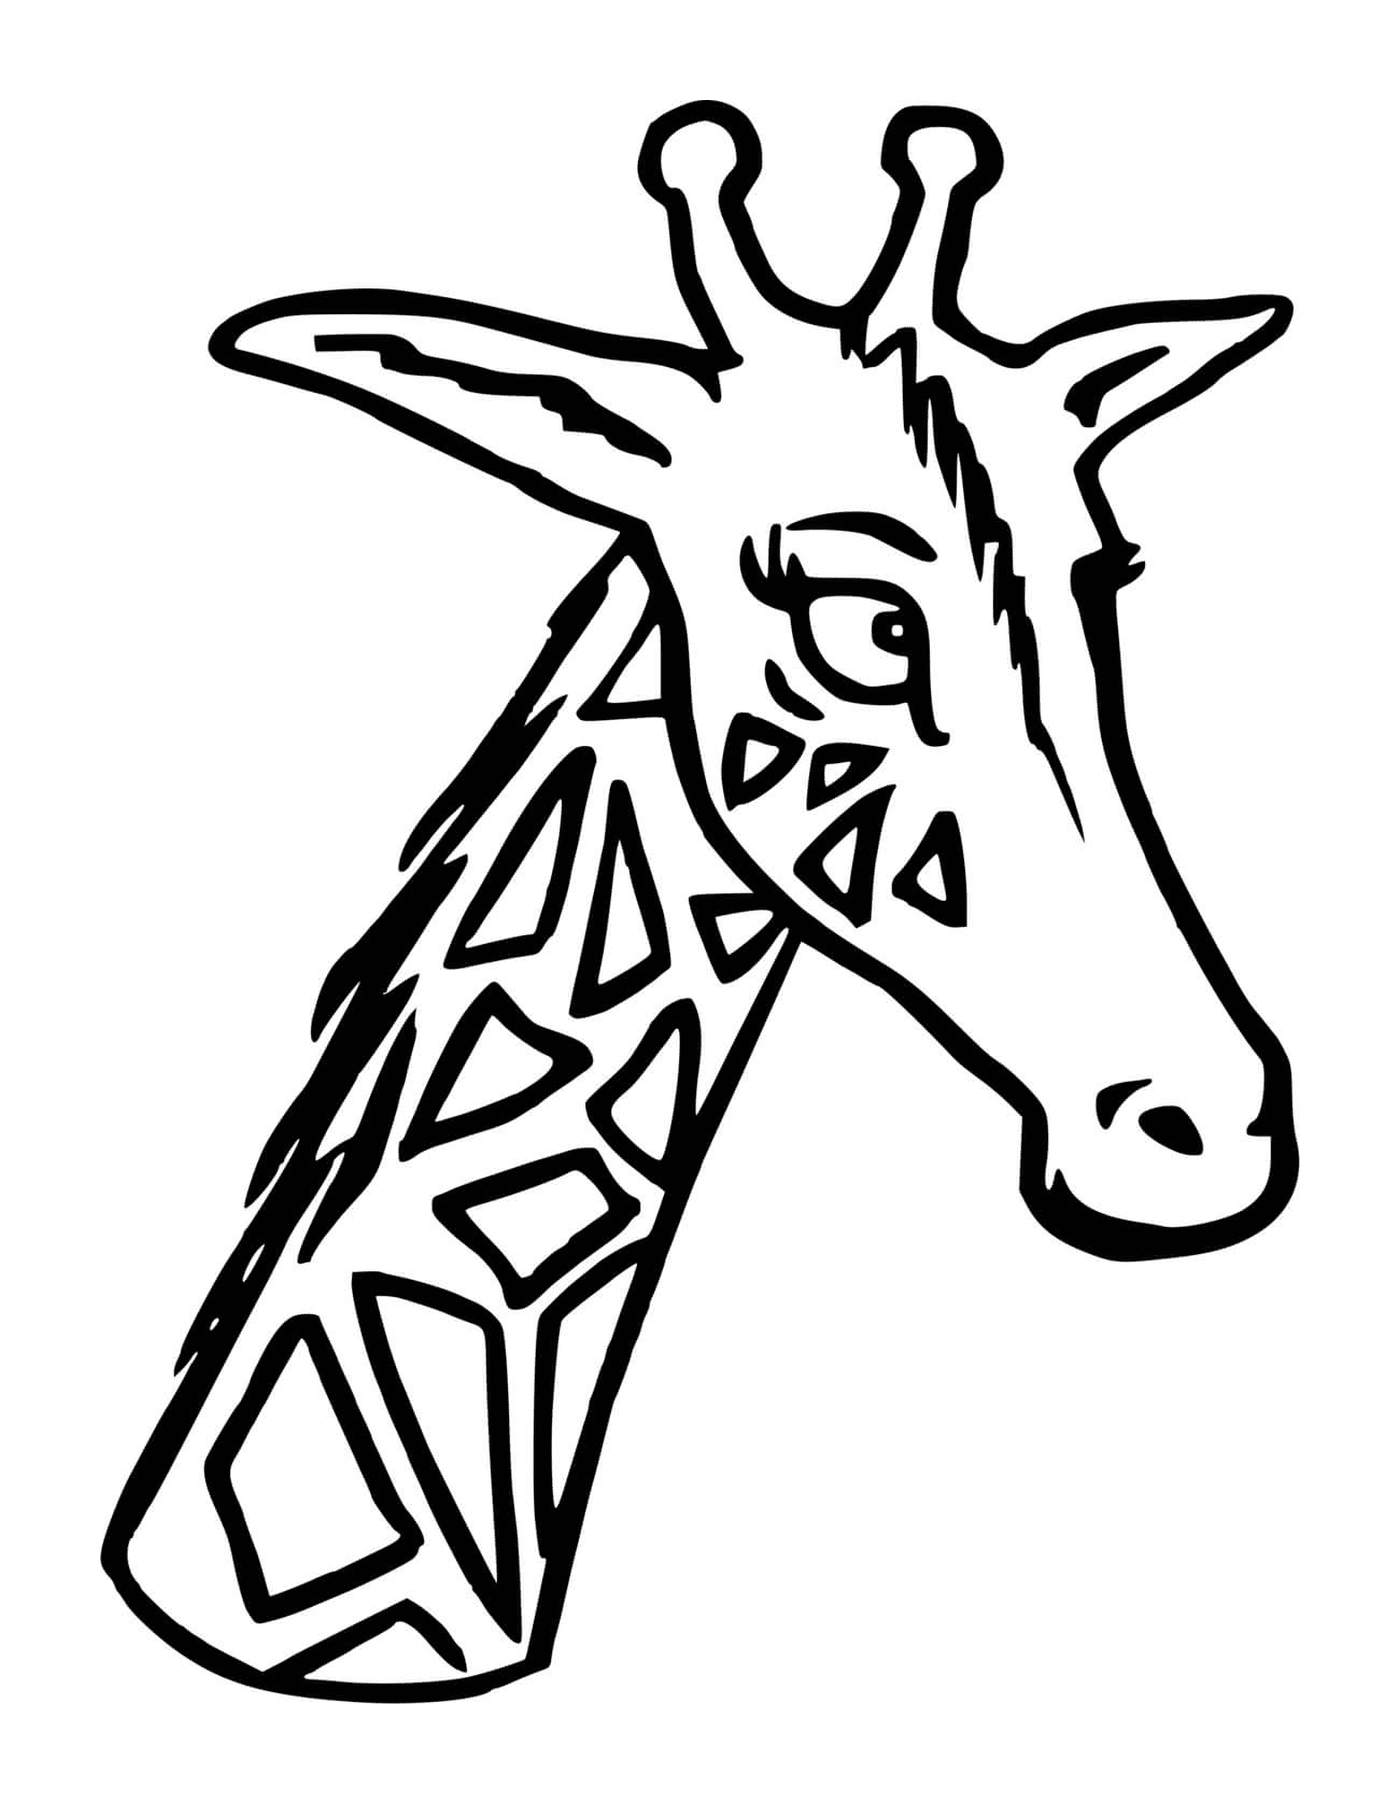  Uma girafa com sua cabeça e pescoço longos 